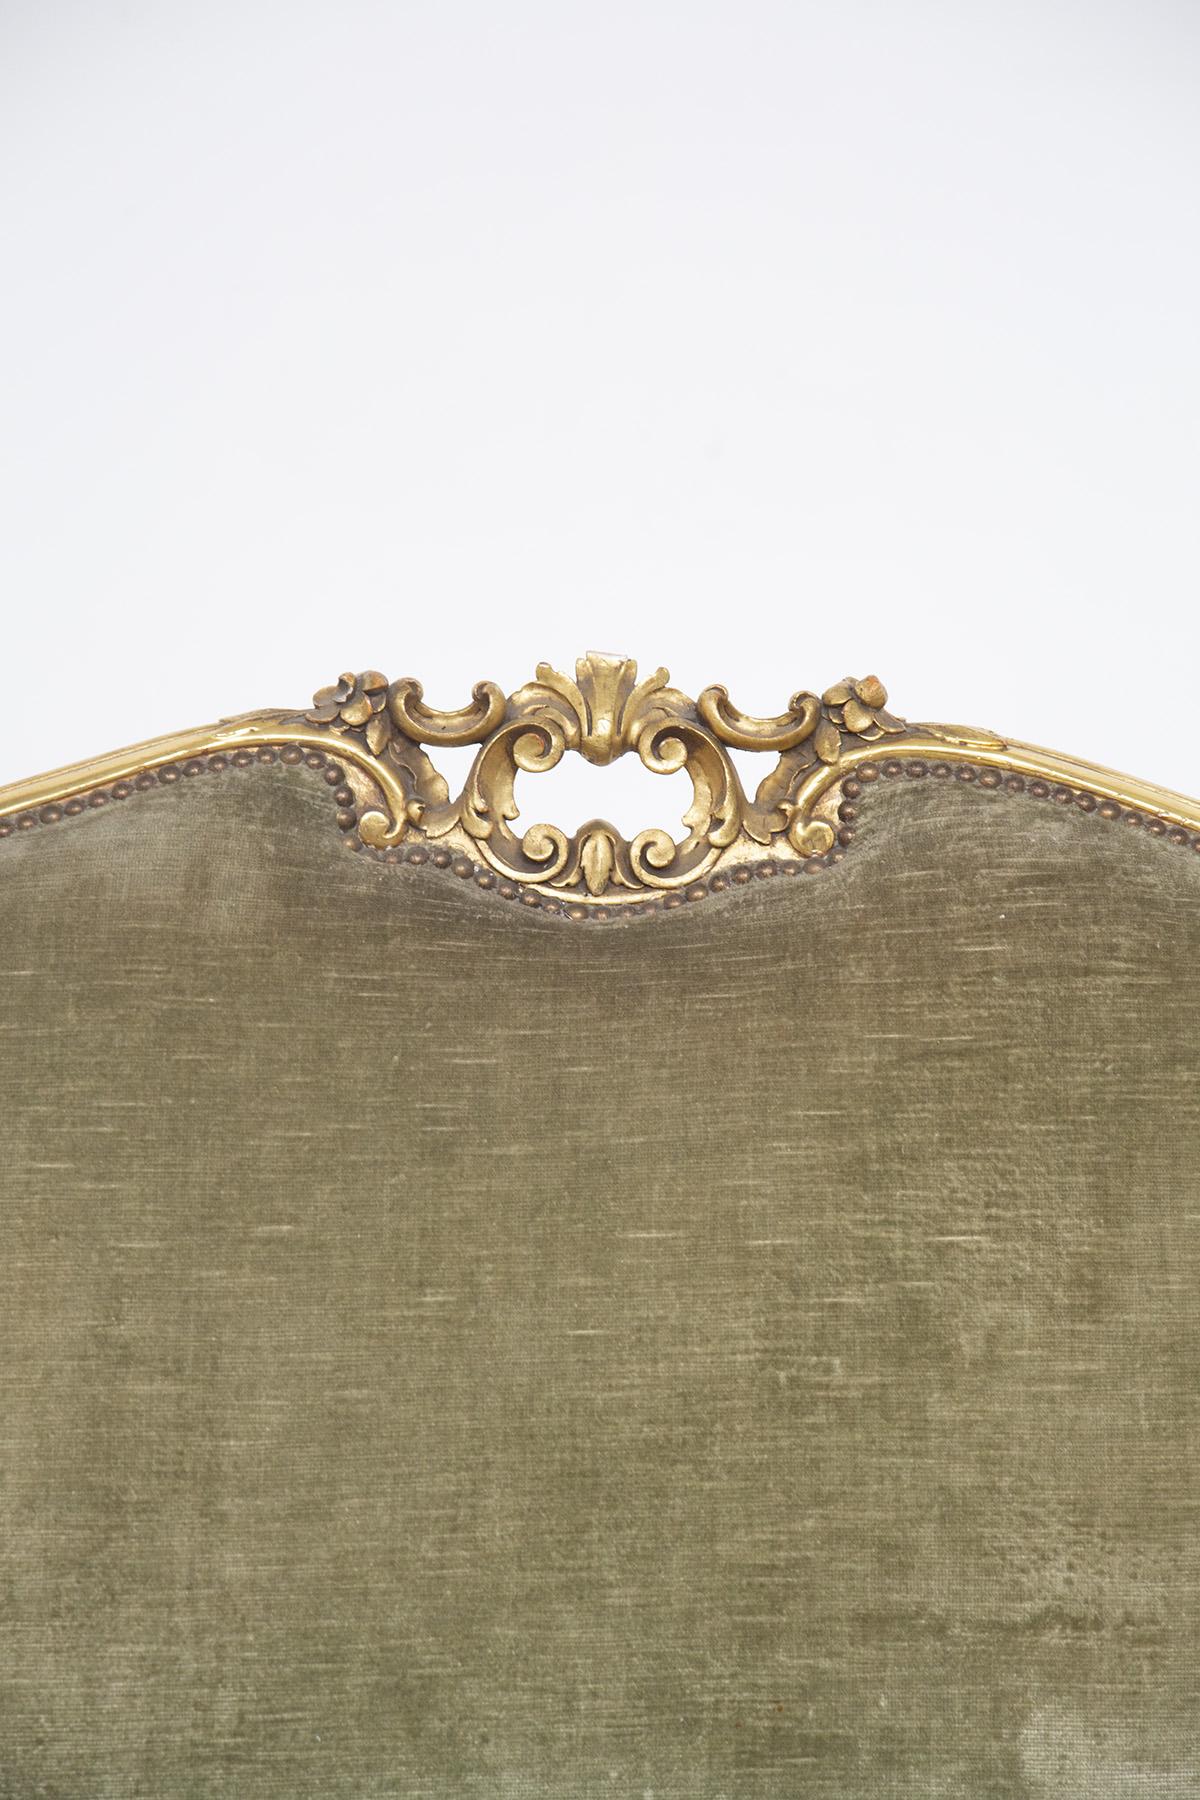 Das Vintage-Sofa ist im Louis-XVI-Stil gehalten und stammt aus feiner italienischer Fertigung aus den frühen 1900er Jahren. Das große Sofa hat drei Sitzplätze und ist mit dem schönen grünen Originalsamt bezogen. Das vergoldete Holz ist mit den für